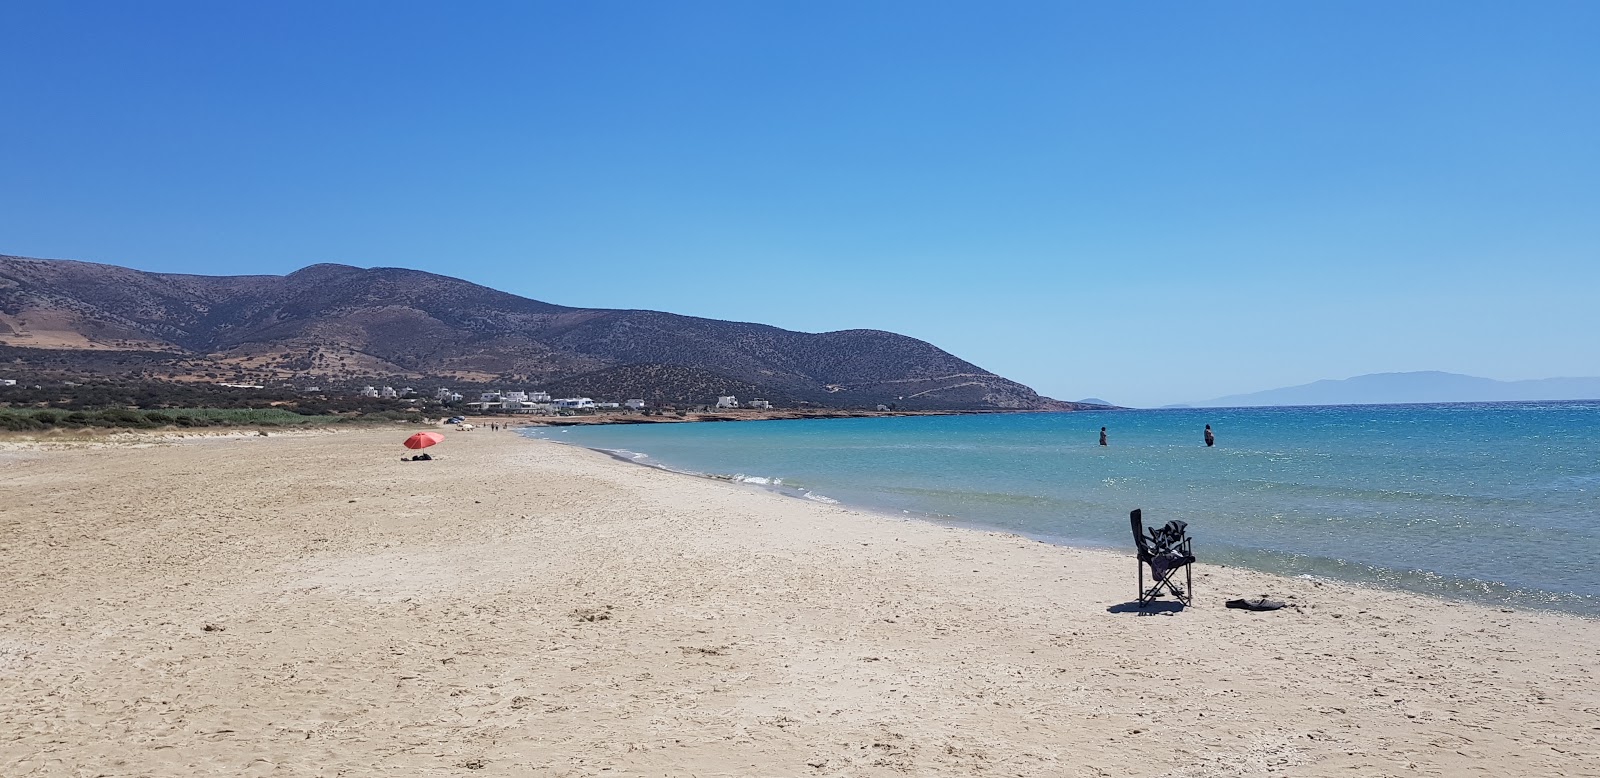 Agiassos Plajı'in fotoğrafı geniş plaj ile birlikte